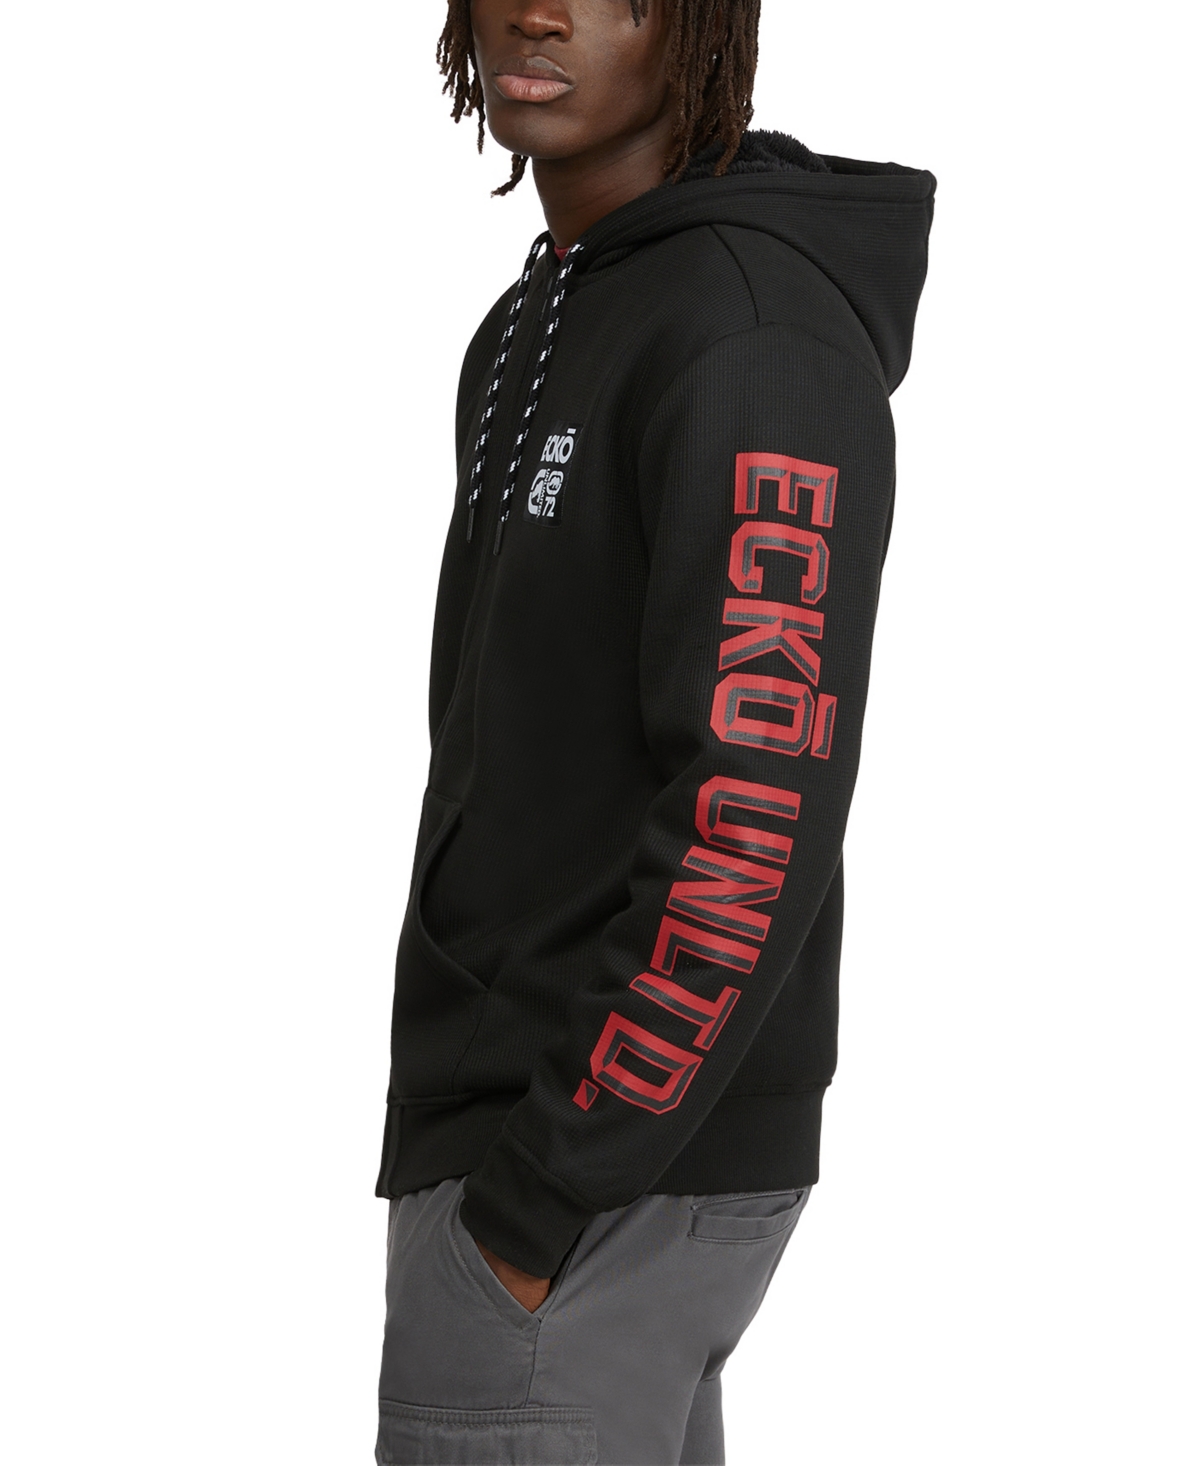 Shop Ecko Unltd Ecko Men's Dimensional Thermal Sherpa Hoodie In Black